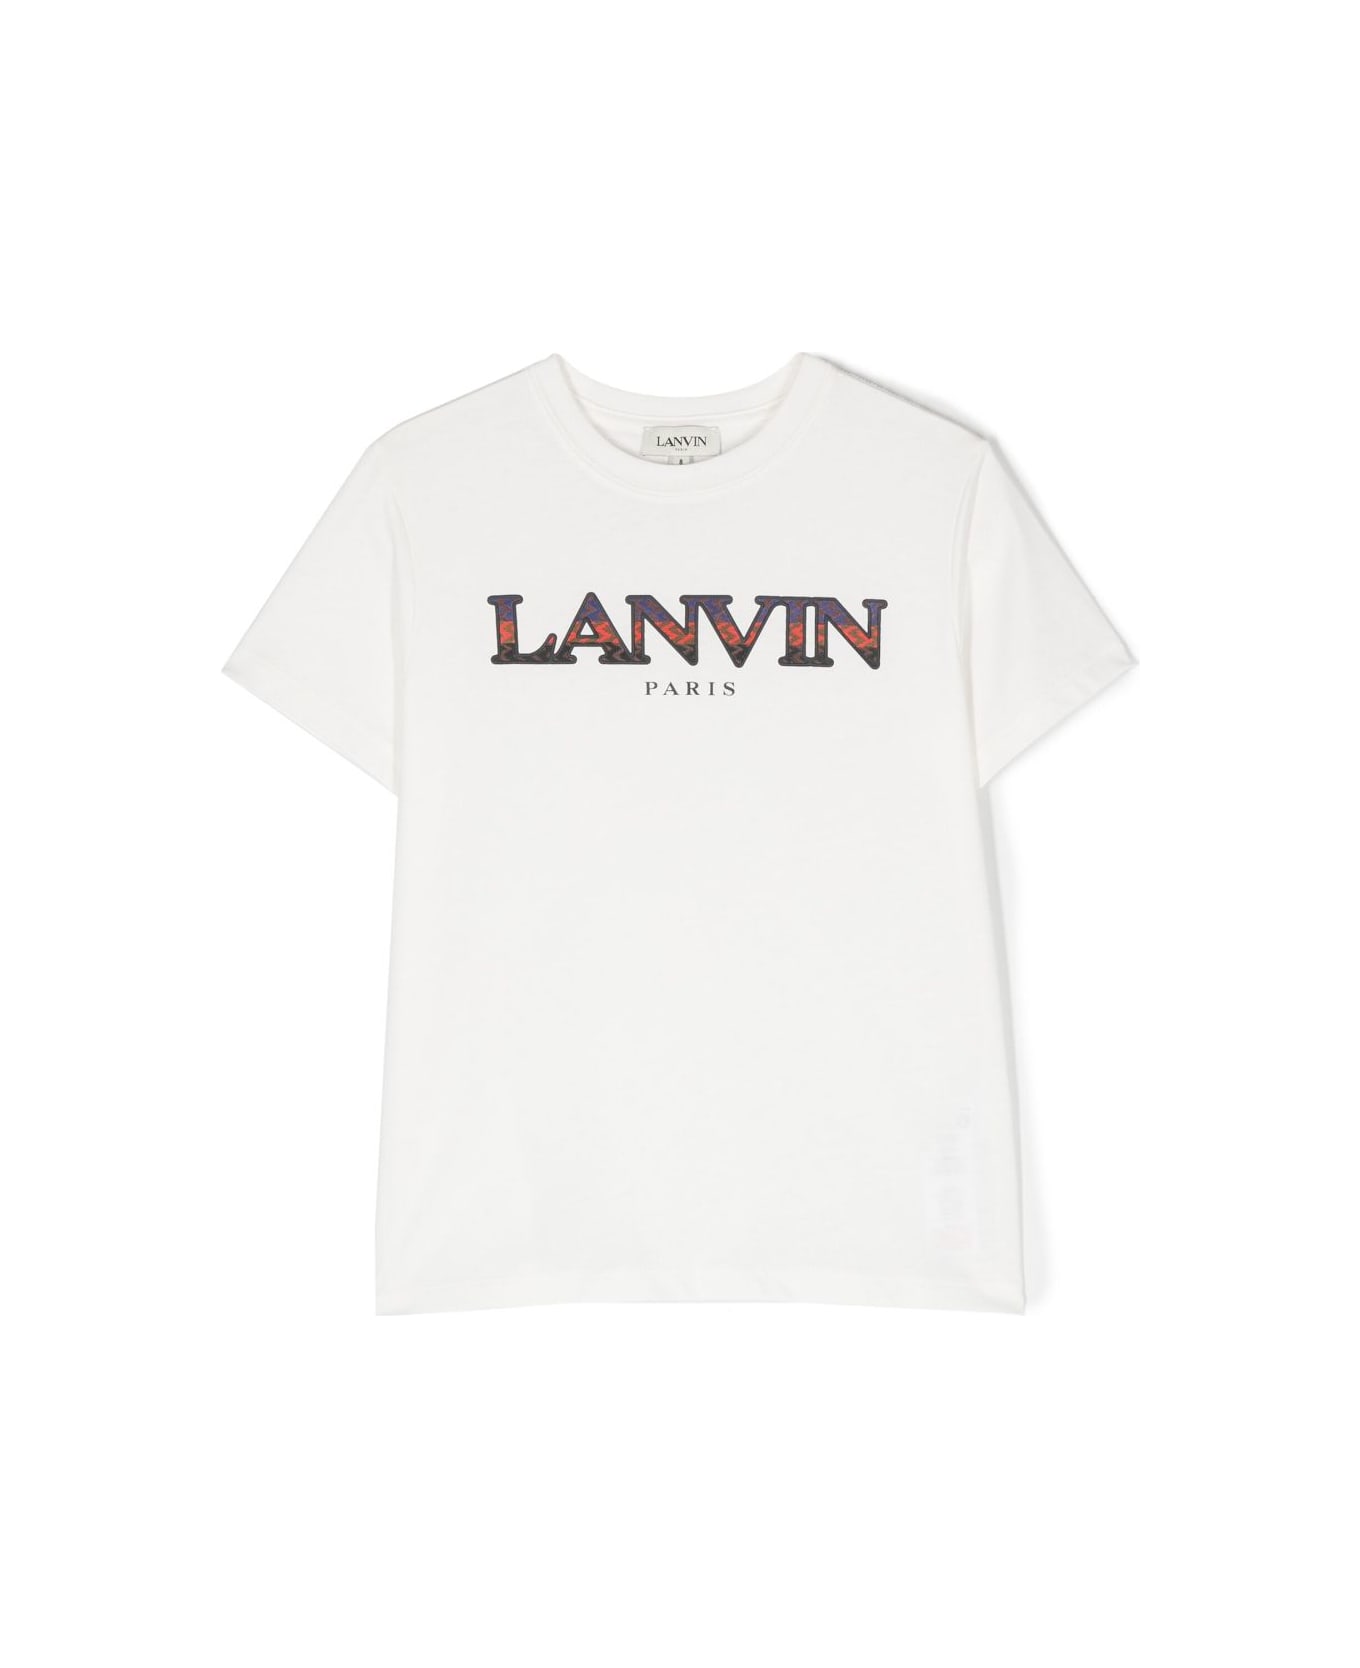 Lanvin T-shirt Bianca In Jersey Di Cotone Bambino - Bianco